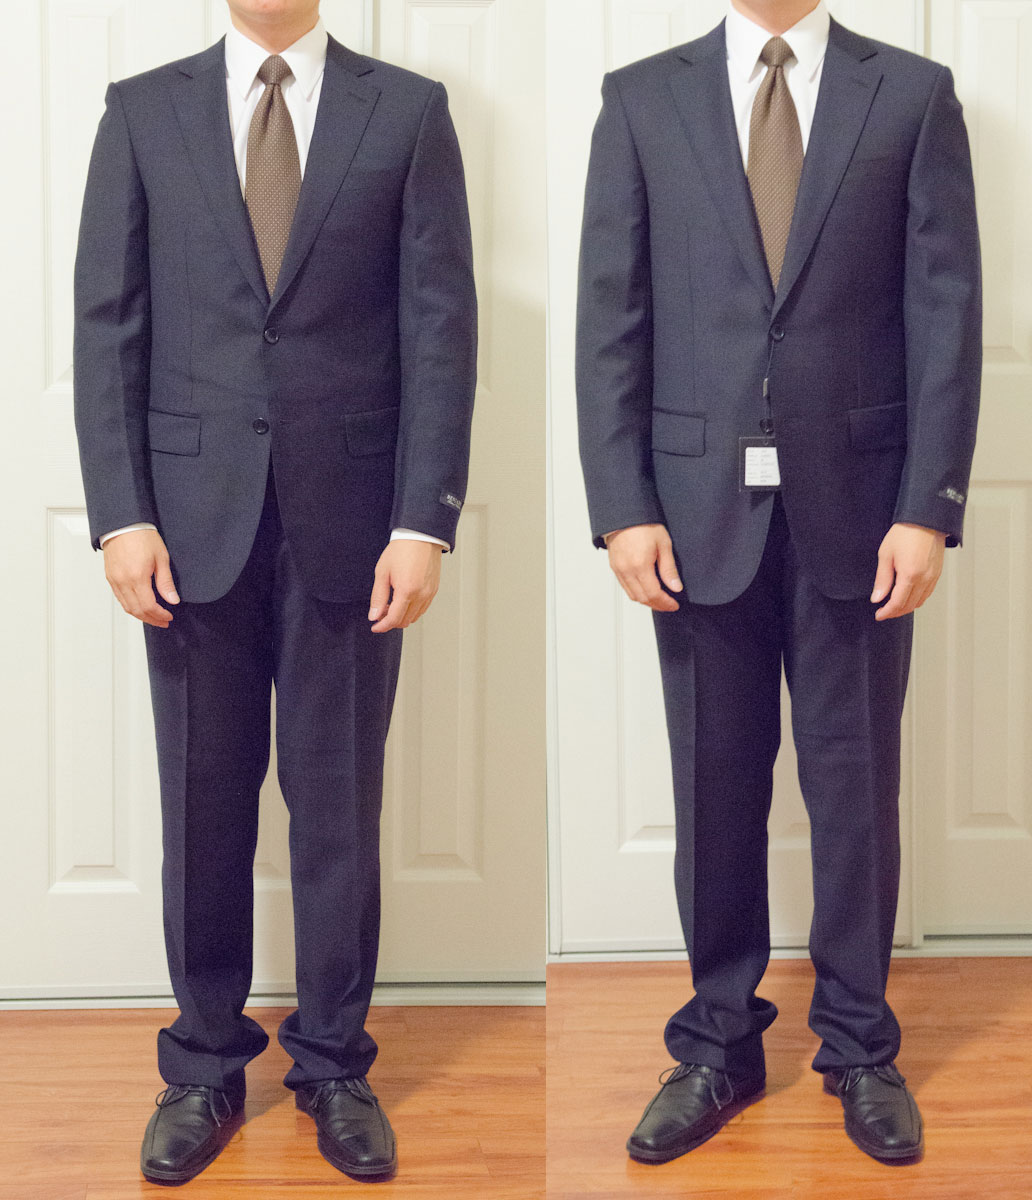 Suit Fit Critique Between 2 Sizes | Styleforum